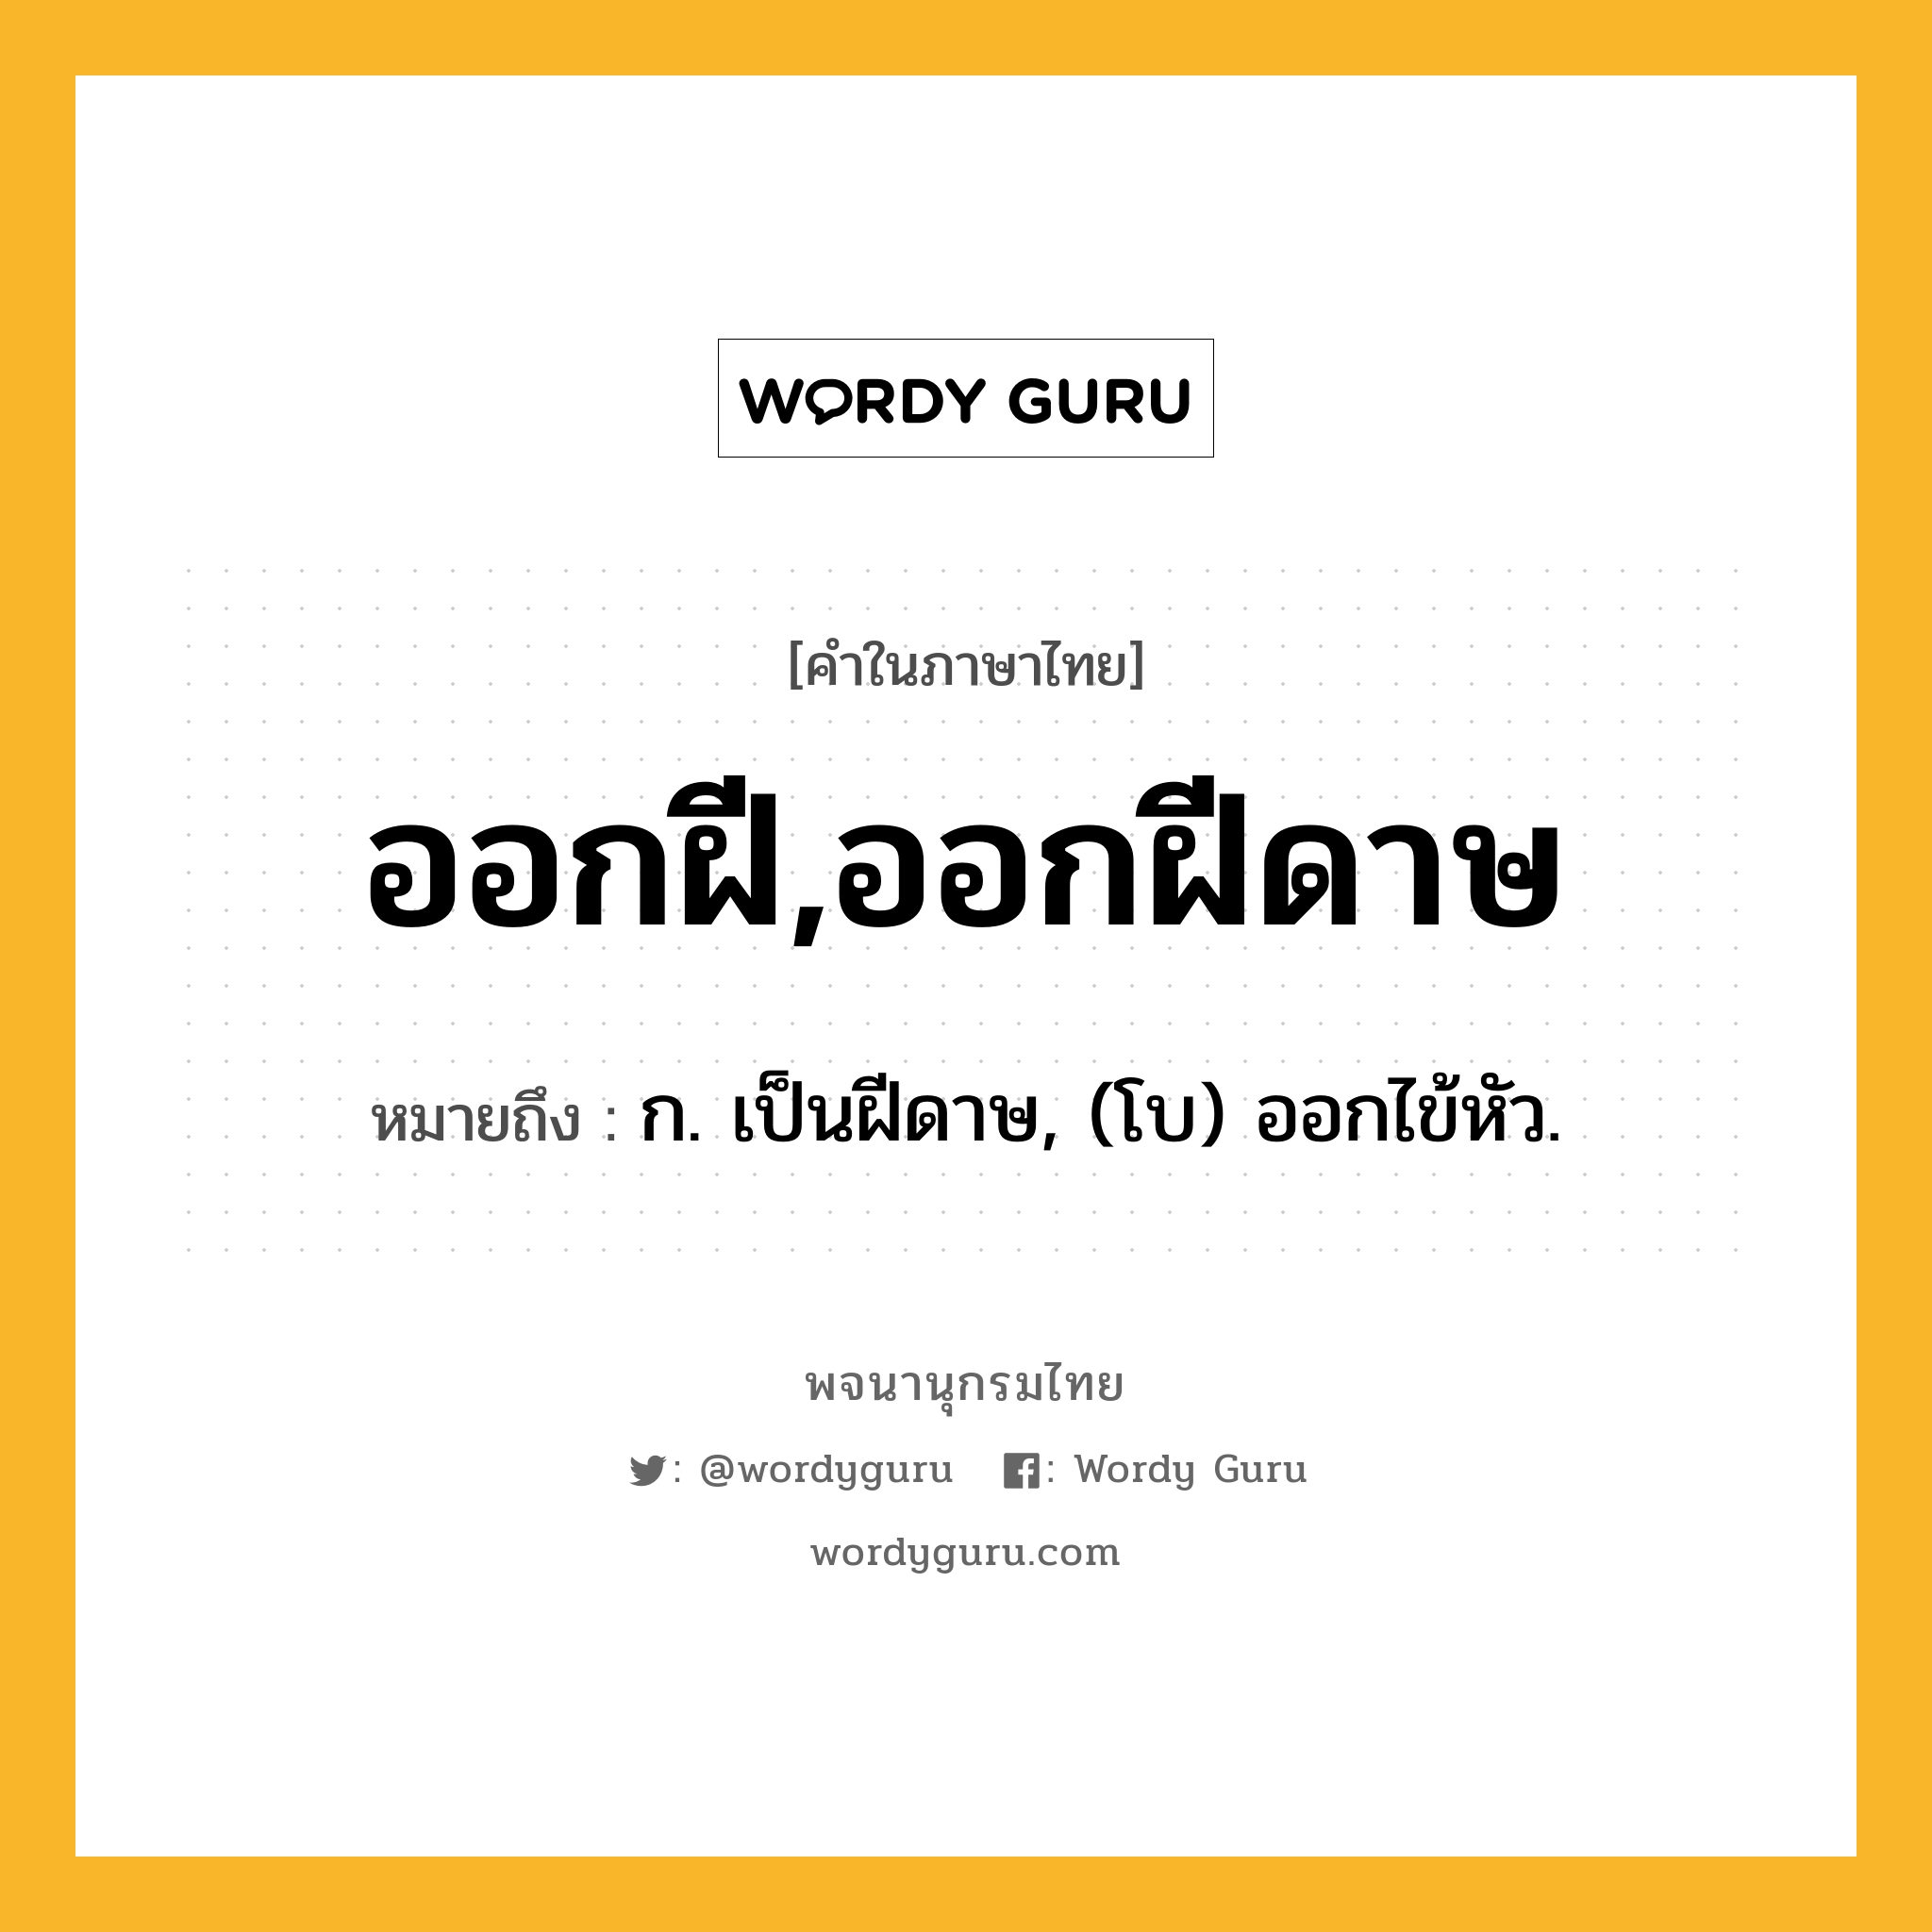 ออกฝี,ออกฝีดาษ หมายถึงอะไร?, คำในภาษาไทย ออกฝี,ออกฝีดาษ หมายถึง ก. เป็นฝีดาษ, (โบ) ออกไข้หัว.